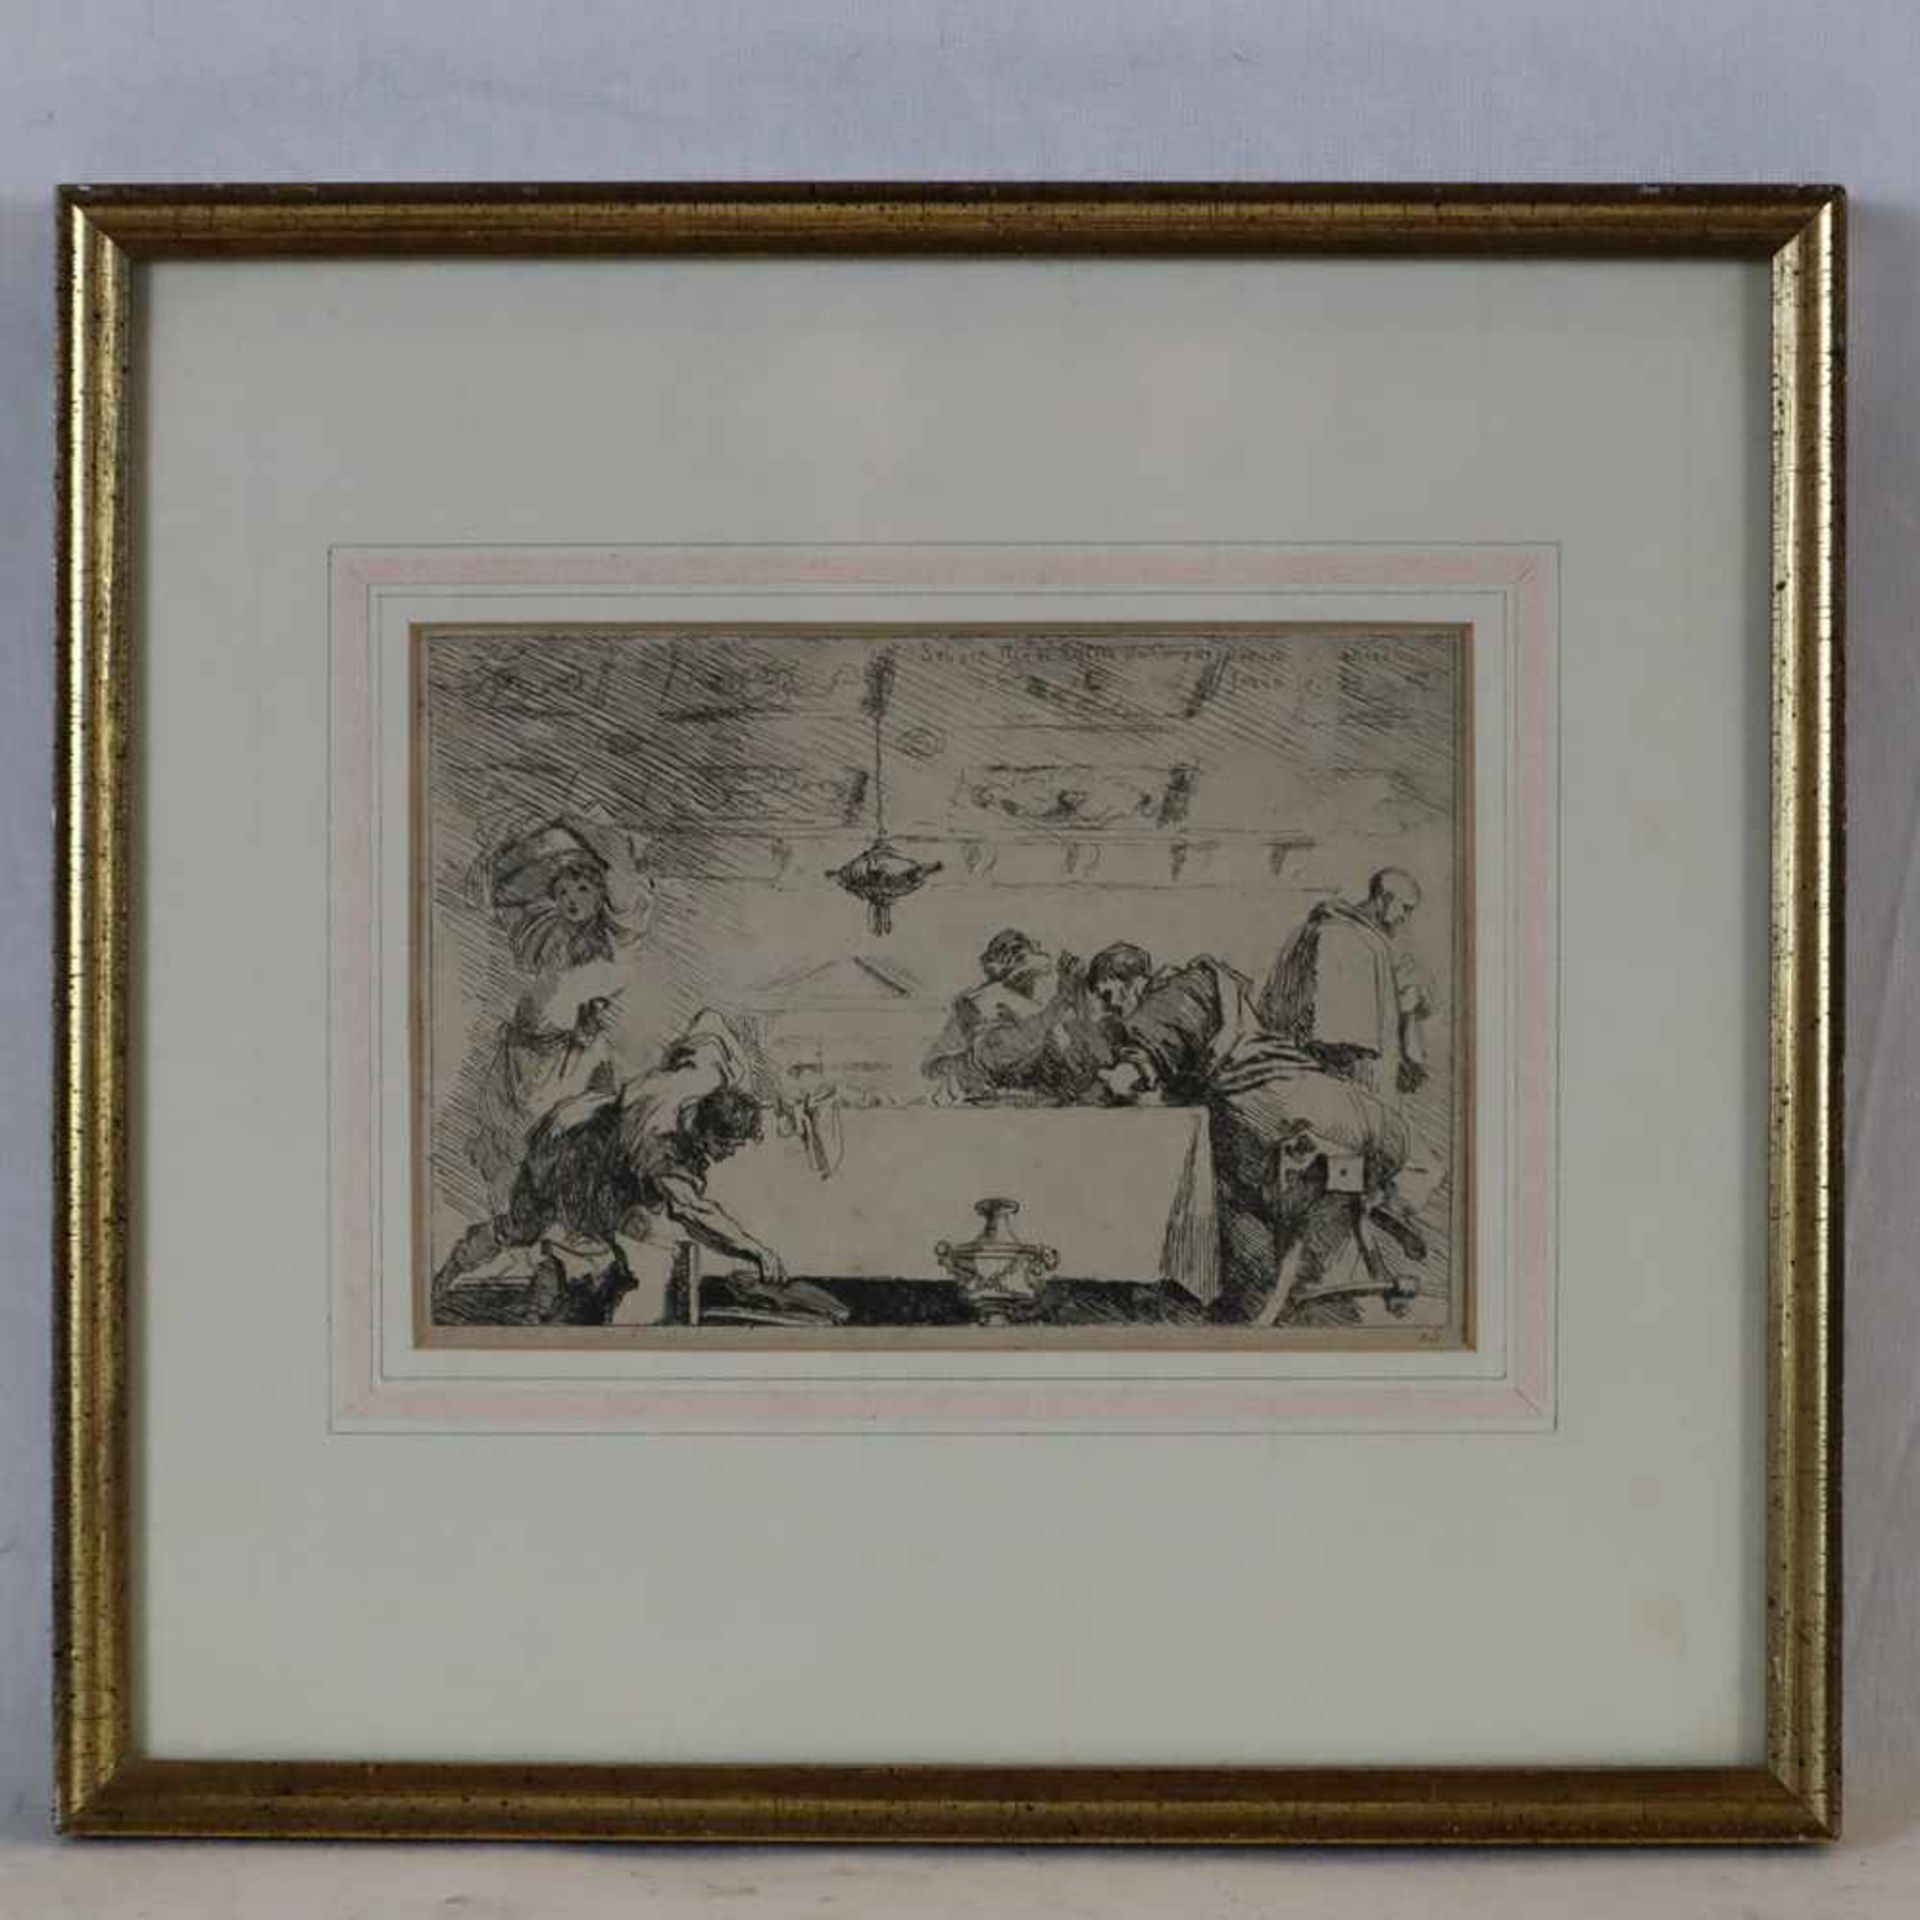 Fragonard, Jean Honoré (1732 Grasse-1806 Paris) - "Die Jünger von Emmaus", Radierung nach Sebastiano